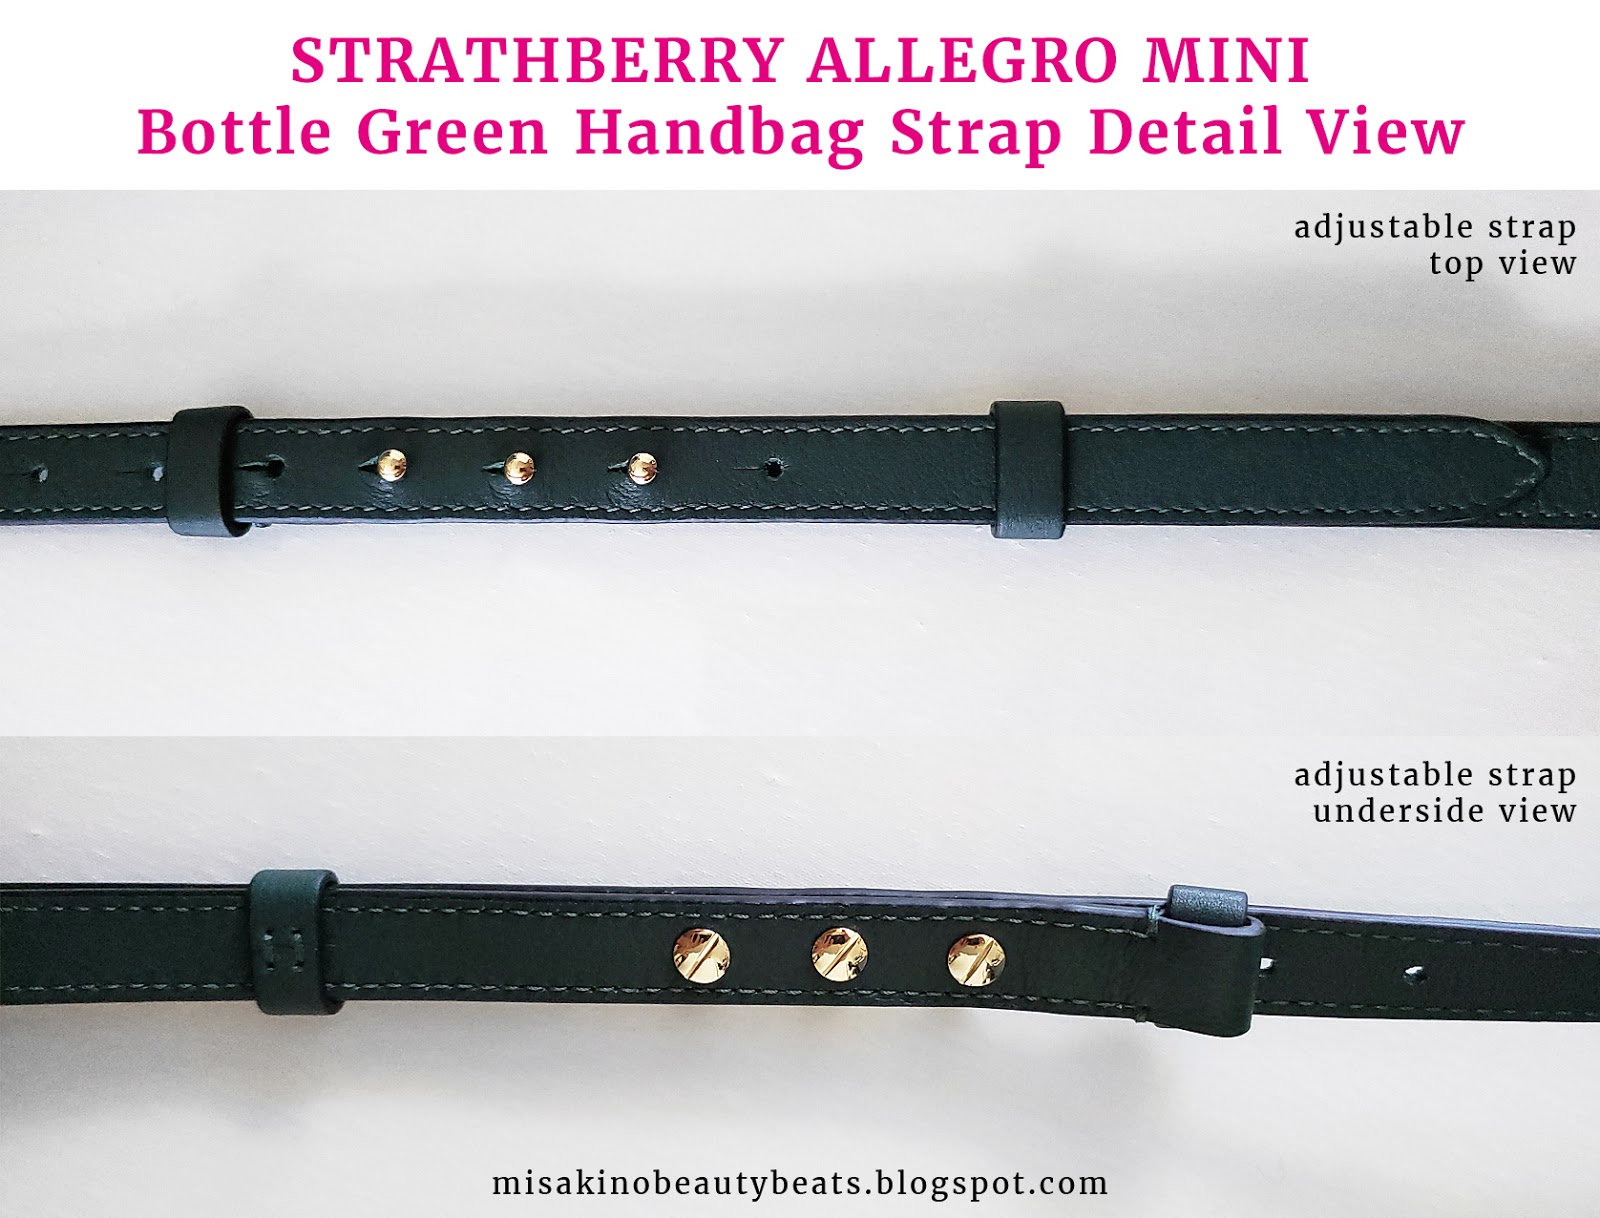 Review: Strathberry Allegro Mini (Monnier Freres) - MISAKINO